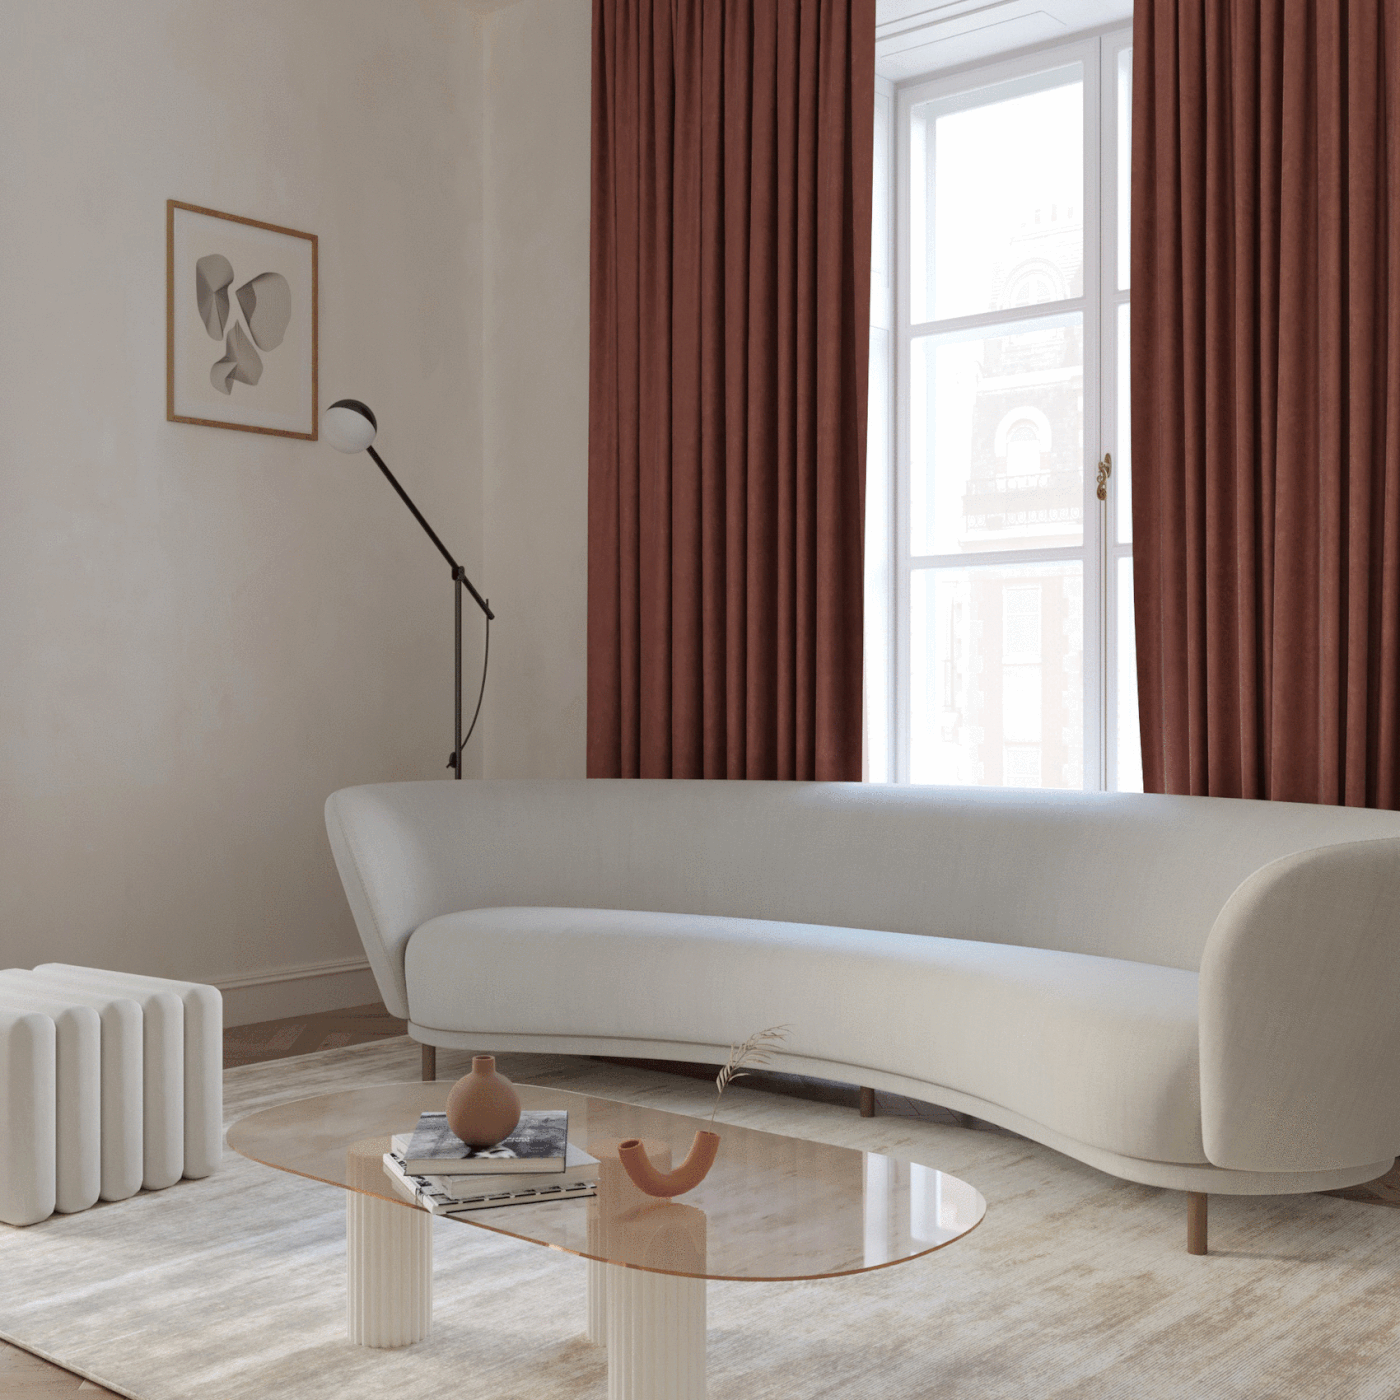 Interior interiordesign livingroom kitchen apartment beige Interior